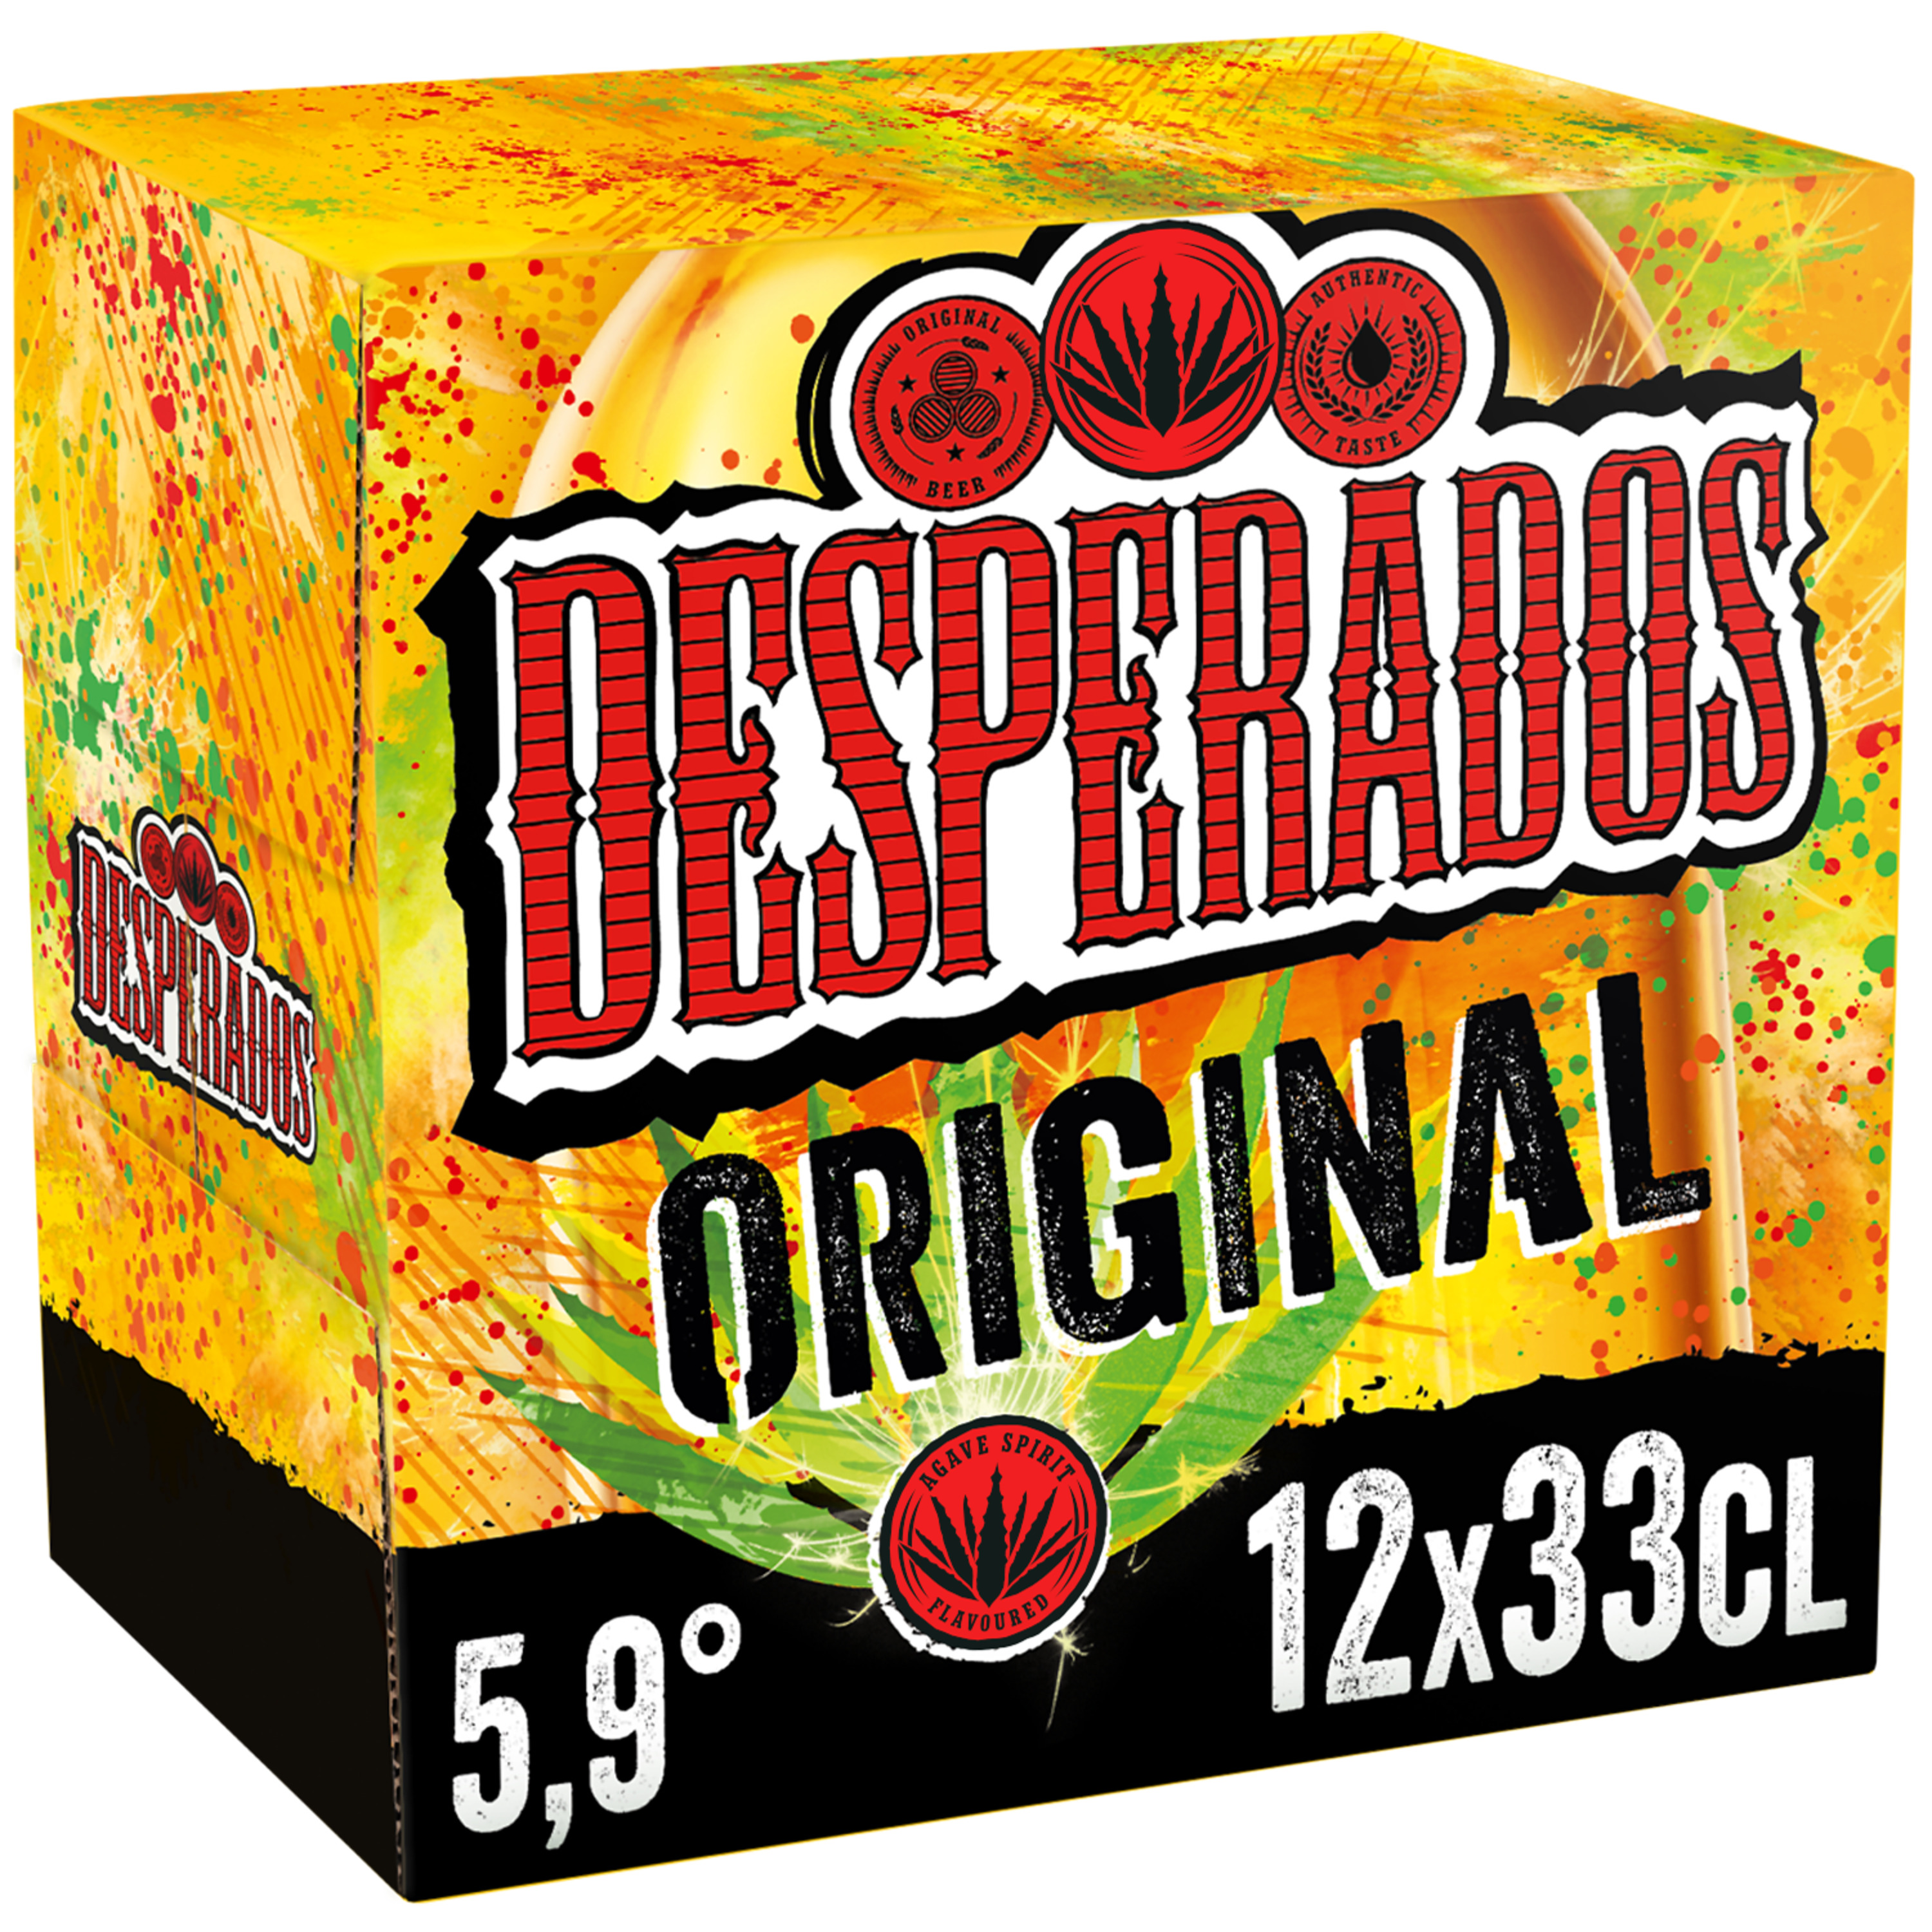 Desperados Tequila Beer - Where to Buy Near Me - BeerMenus